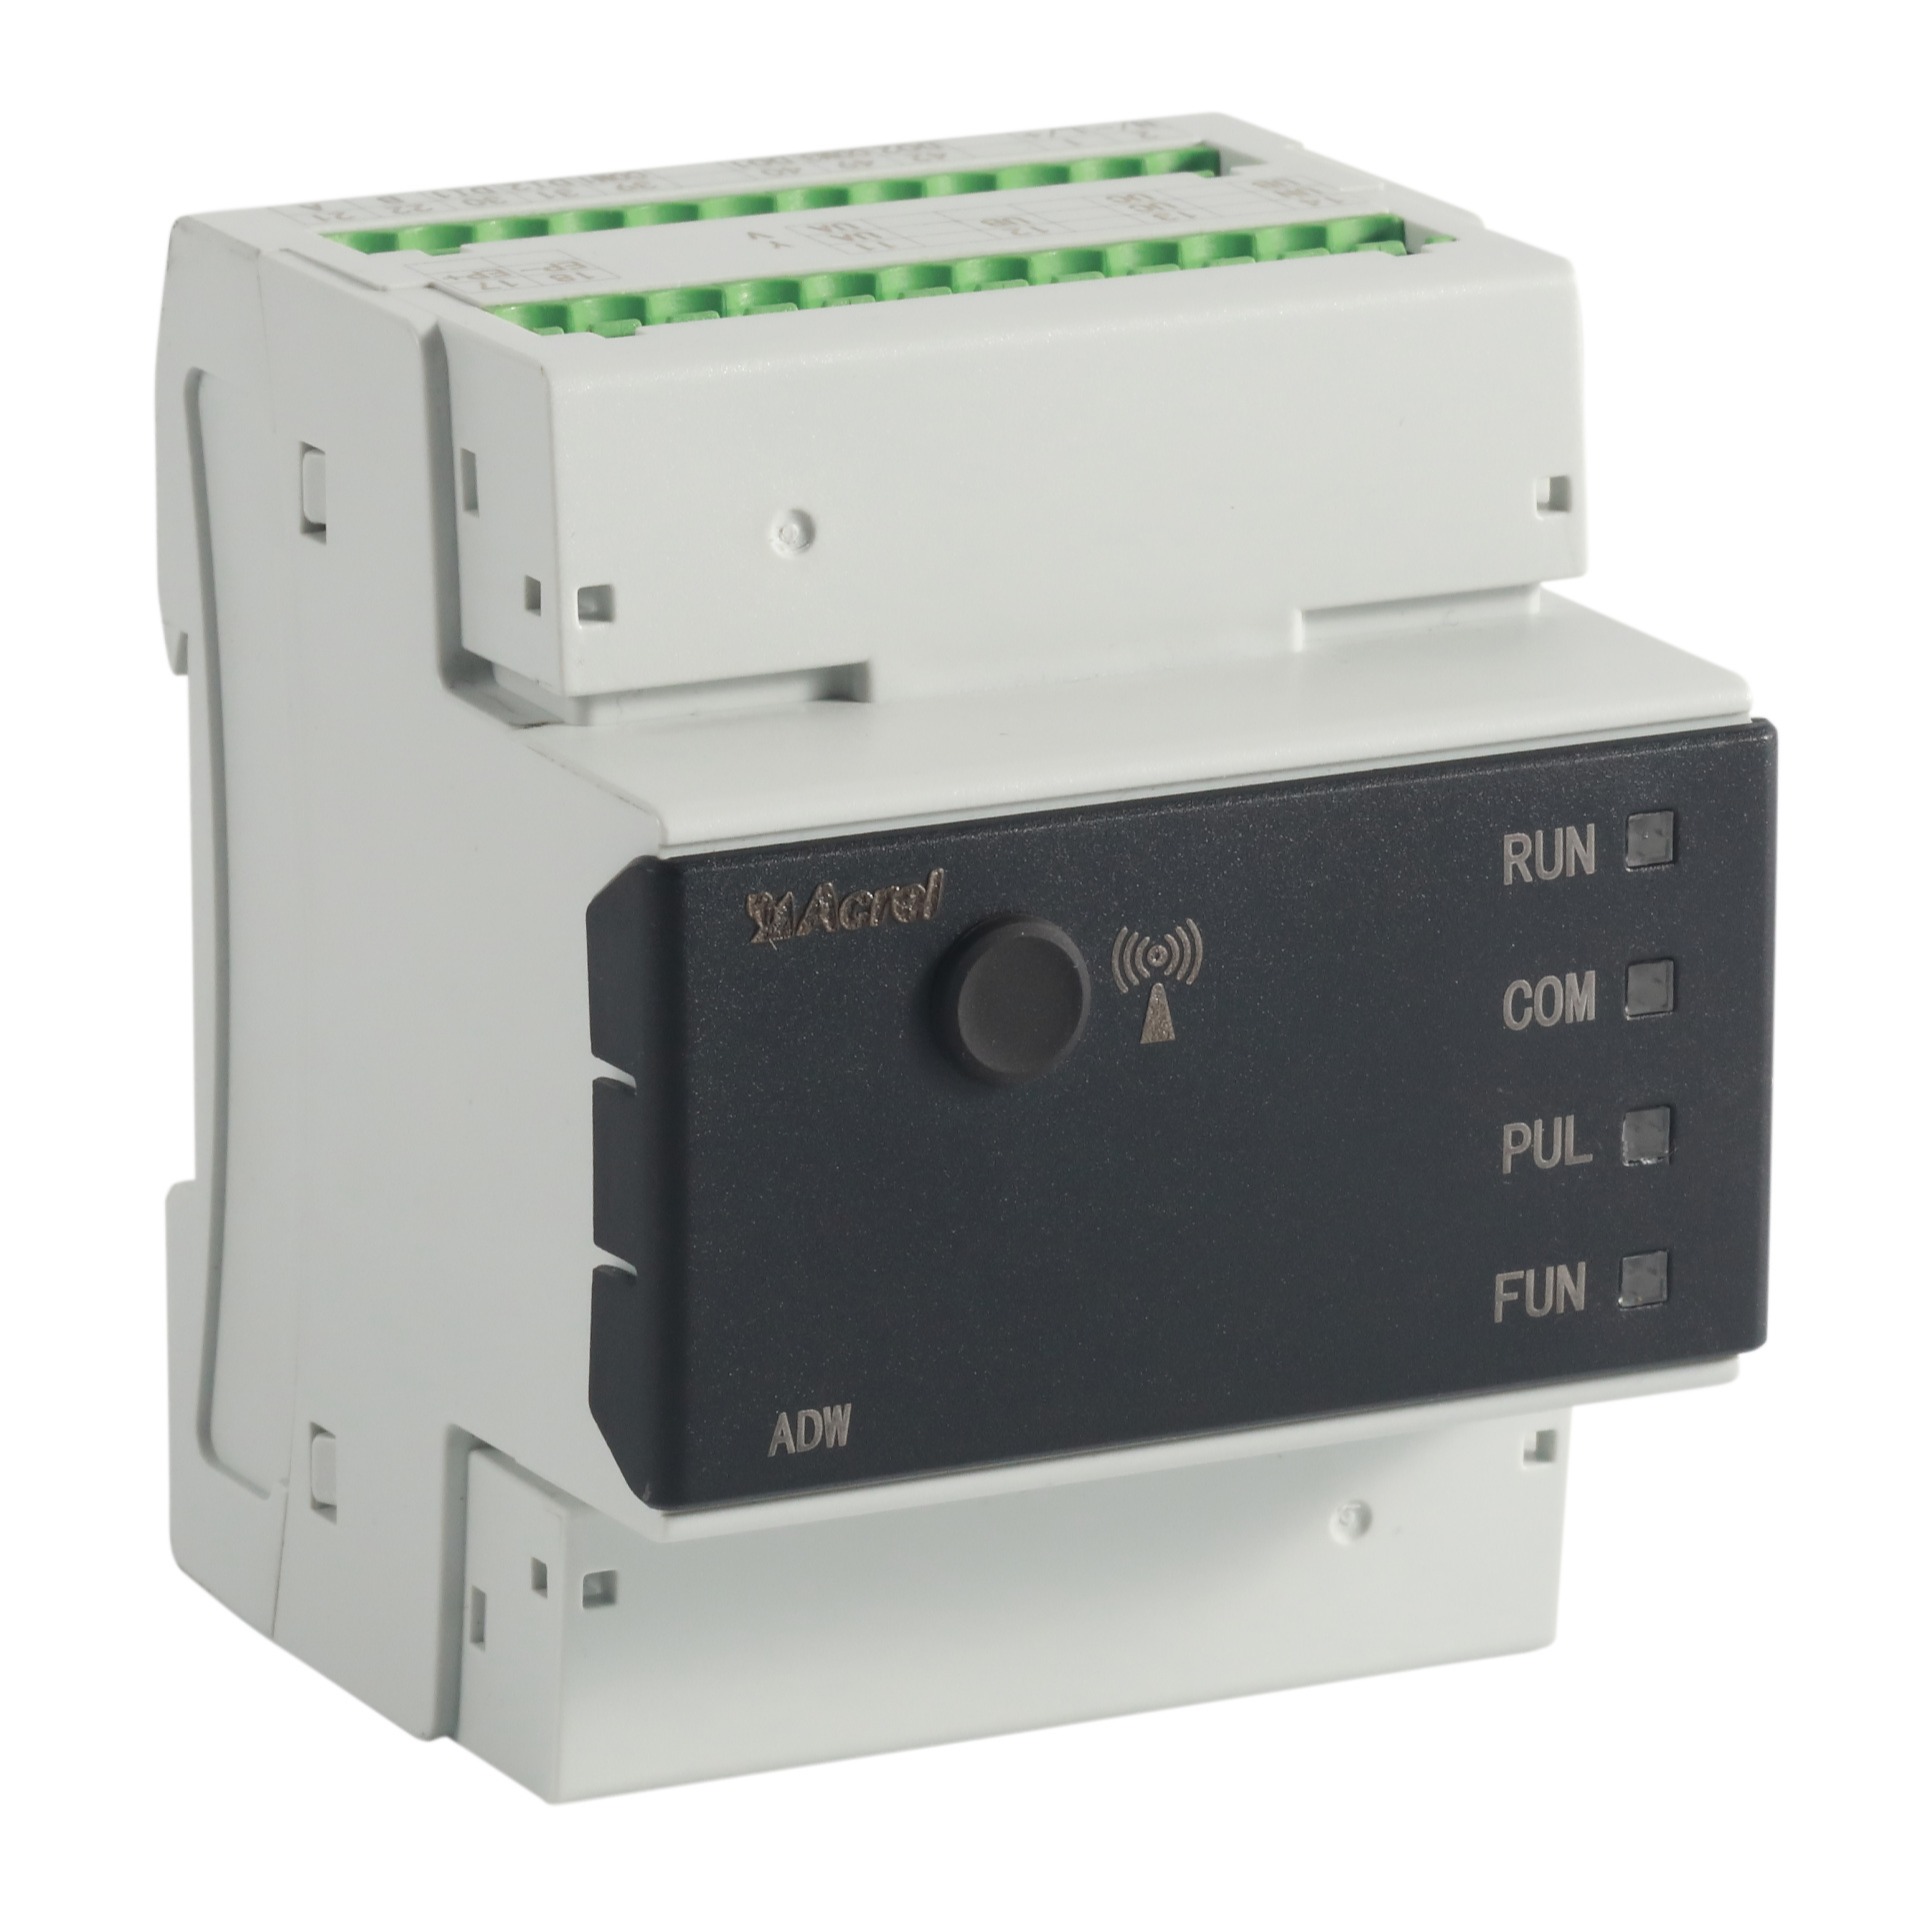 安科瑞ADW200-D16系列电力物联网仪表多回路电表 标配互感器 支持LORA无线传输